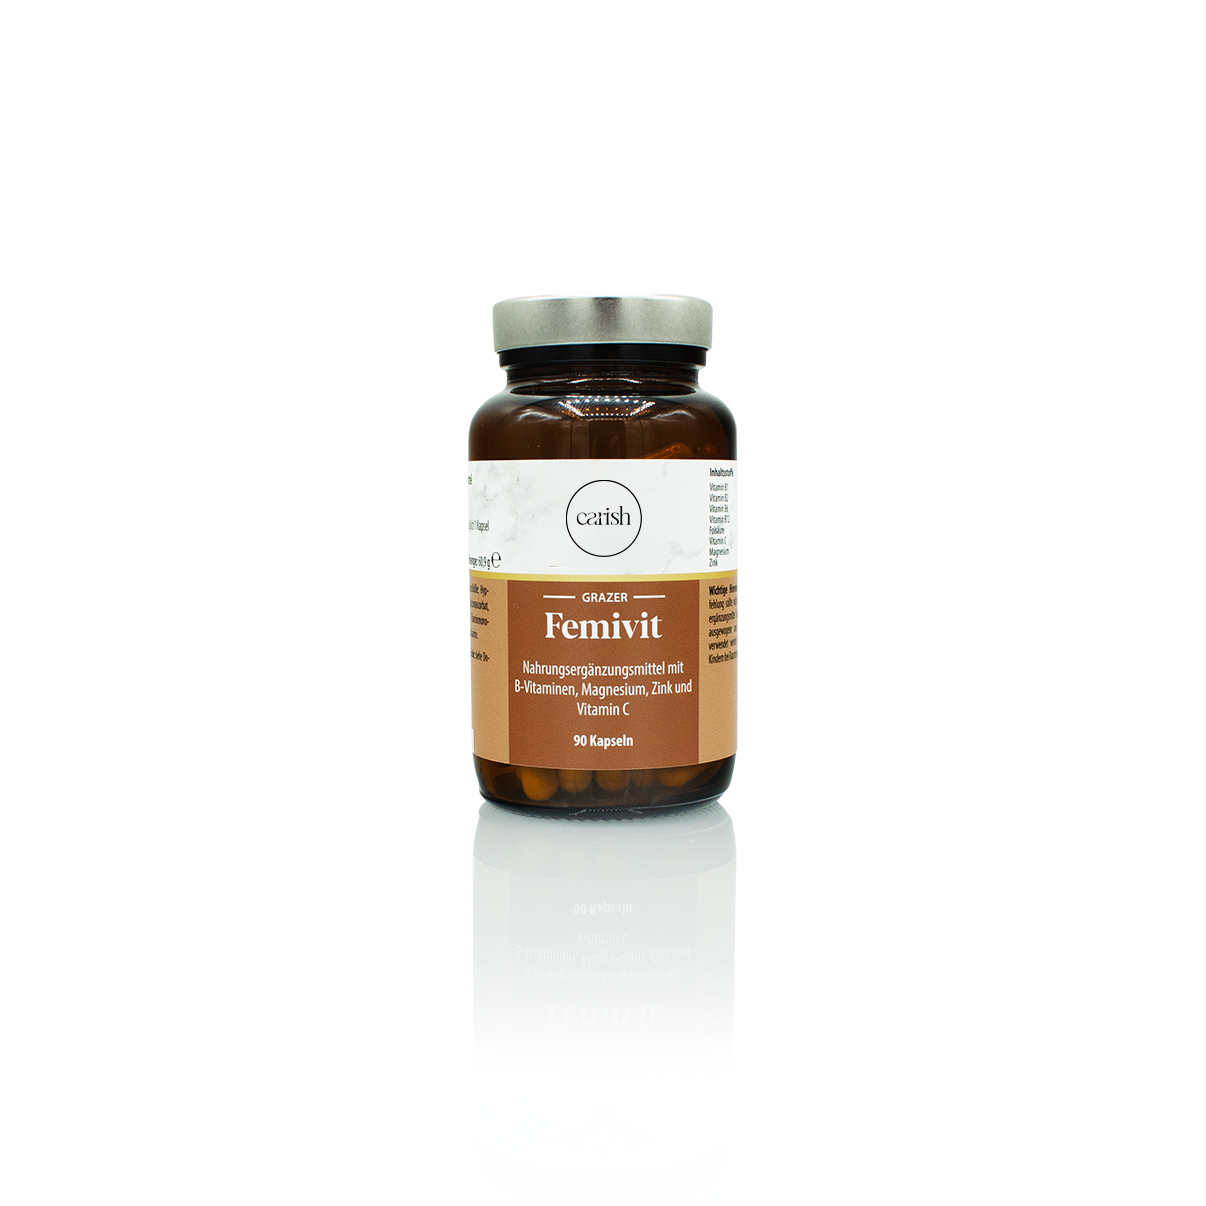 Brauner Glasbehälter mit verschraubbarem Deckel der Femivit Kapseln zur Unterstützung bei hormoneller Verhütung.